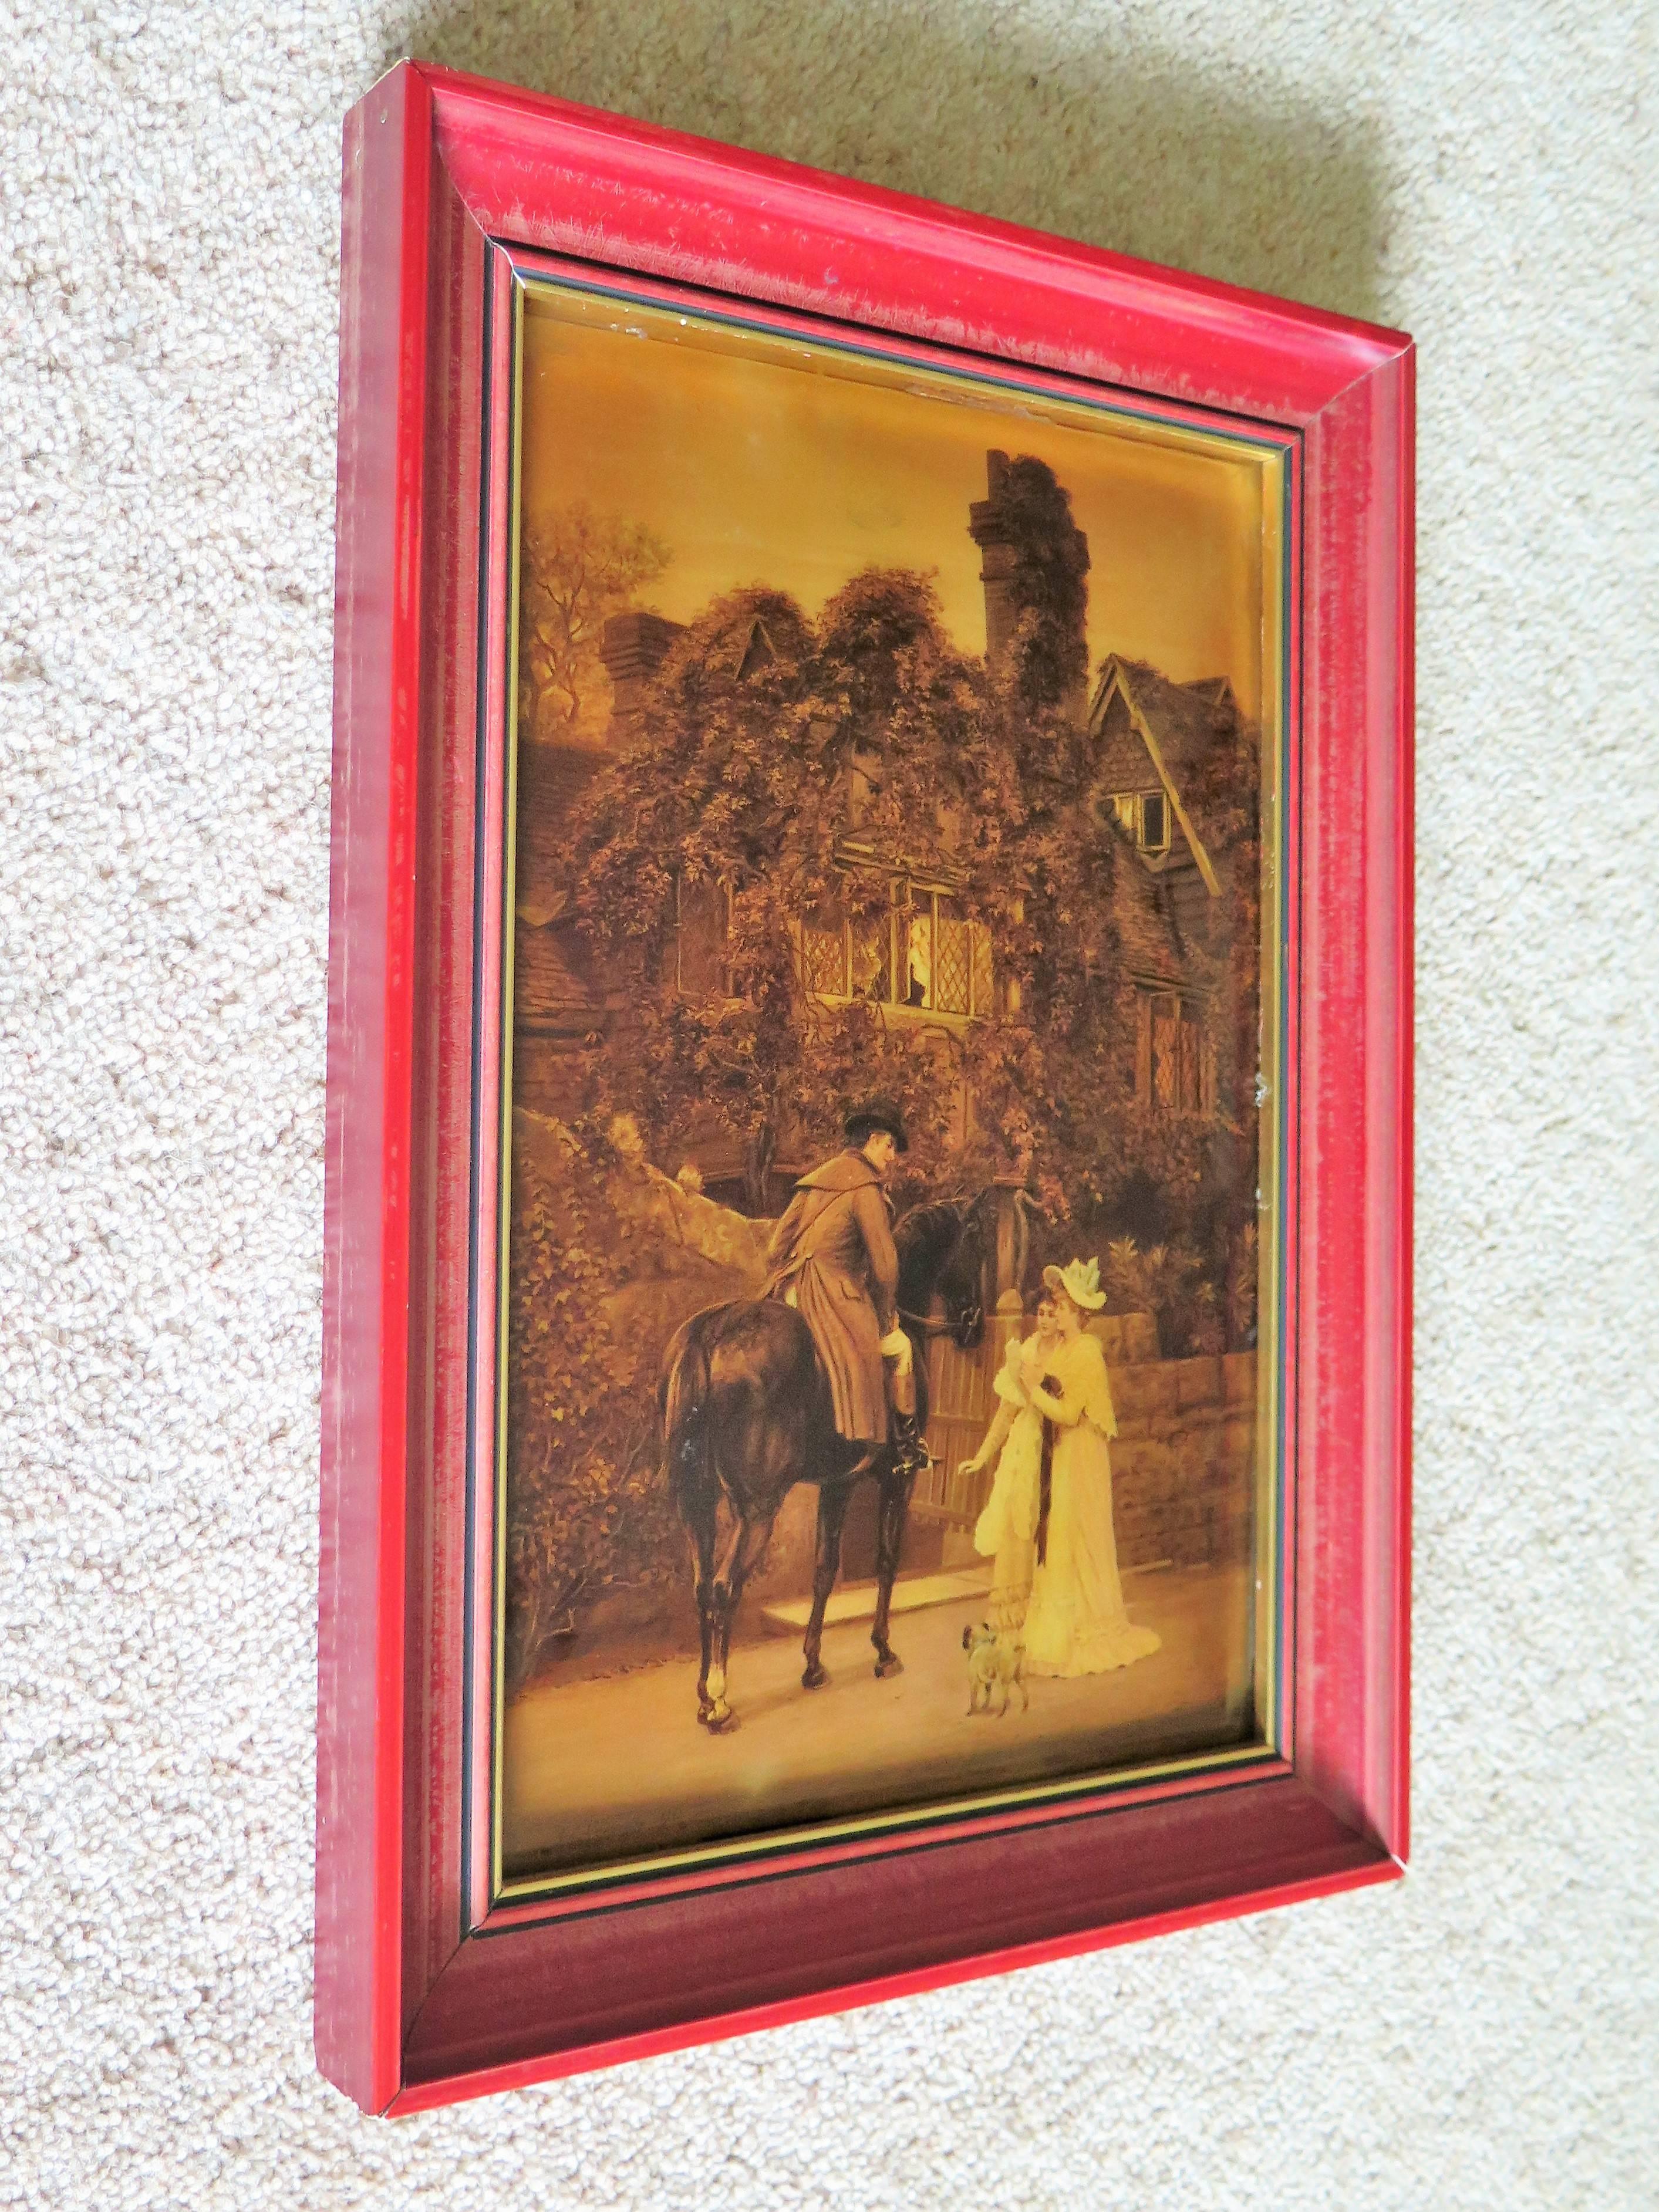 Dies ist eine sehr dekorative viktorianischen Zeit Crystoleum Bild nach A L Vernon genannt The Messenger to The Heiress und aus der späten viktorianischen Zeit, 1896 

Das Crystoleum befindet sich in einem rot lackierten Holzrahmen.

Arthur Langley